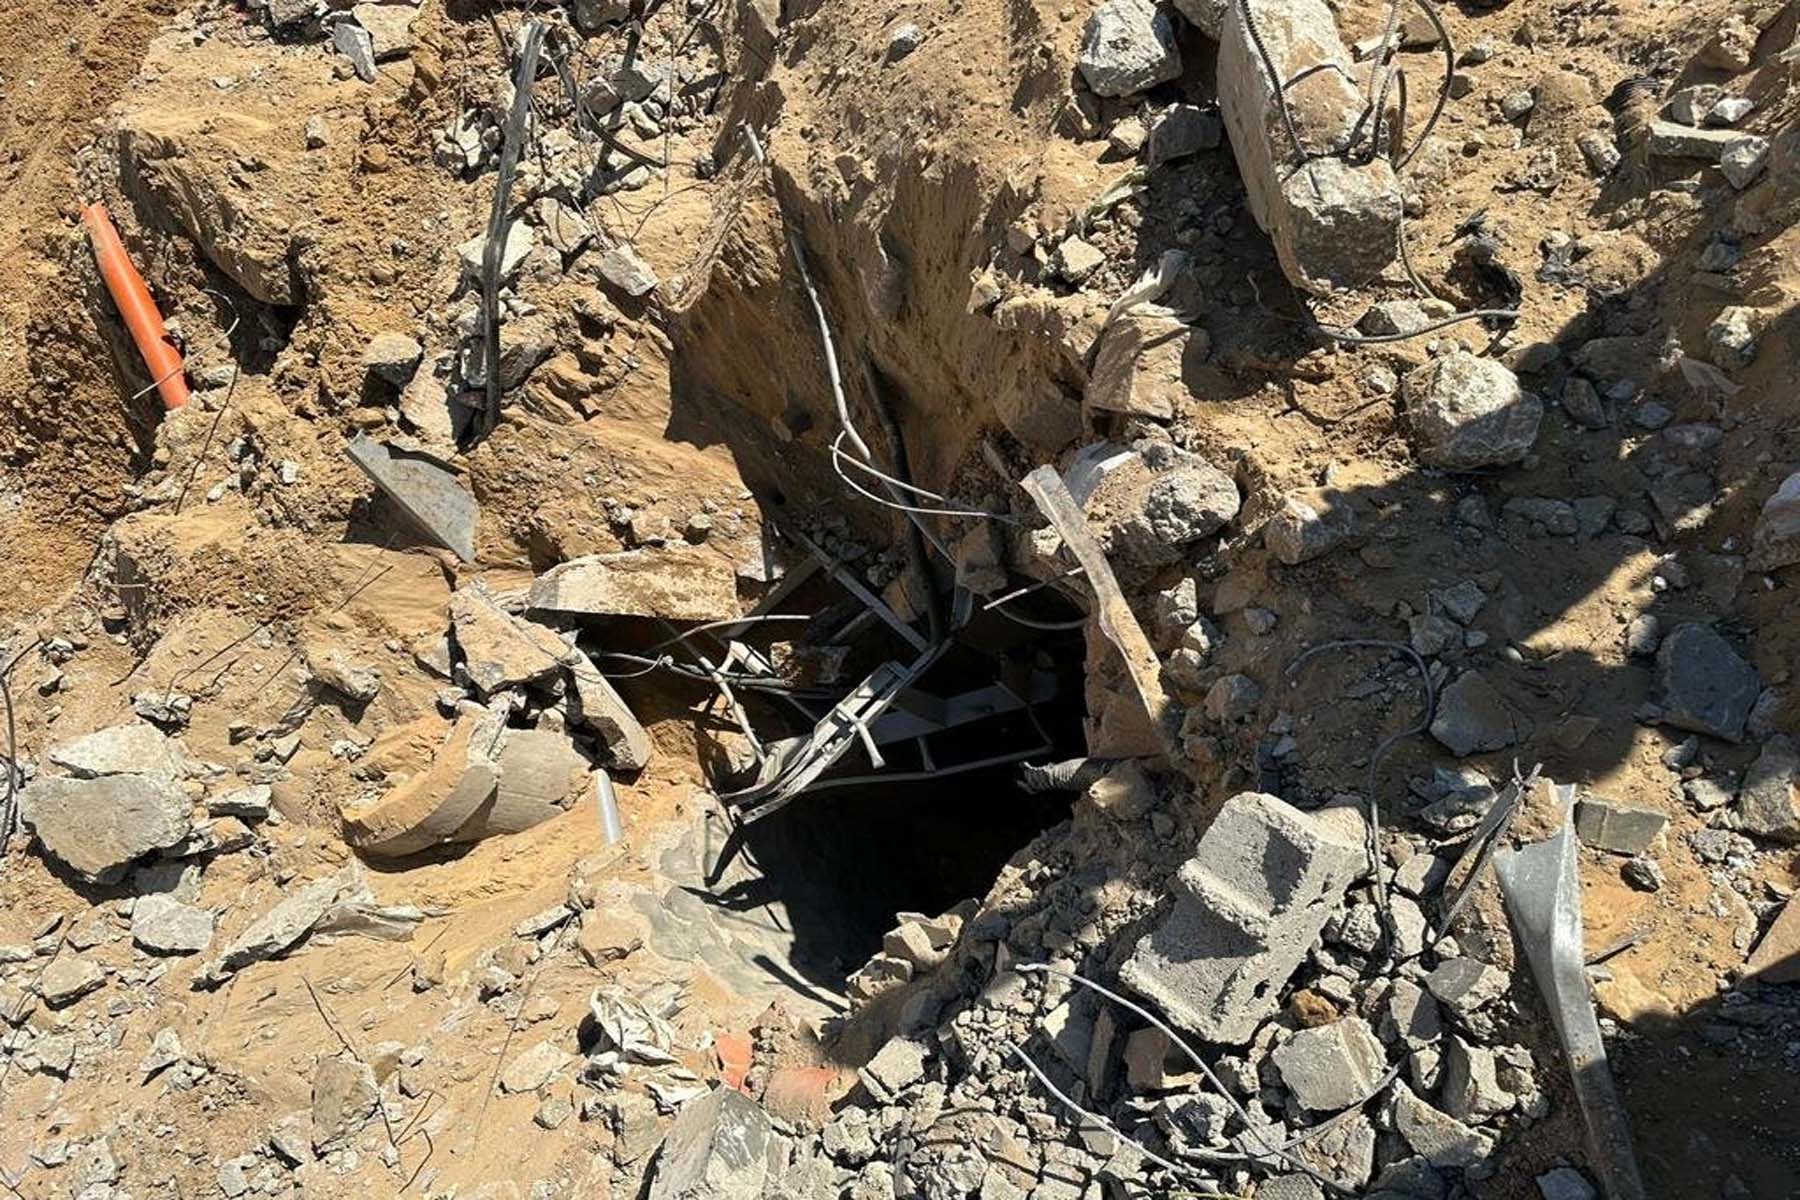 ارتش اسرائیل: کشف تونل عملیاتی حماس در بیمارستان الشفاء در غزه